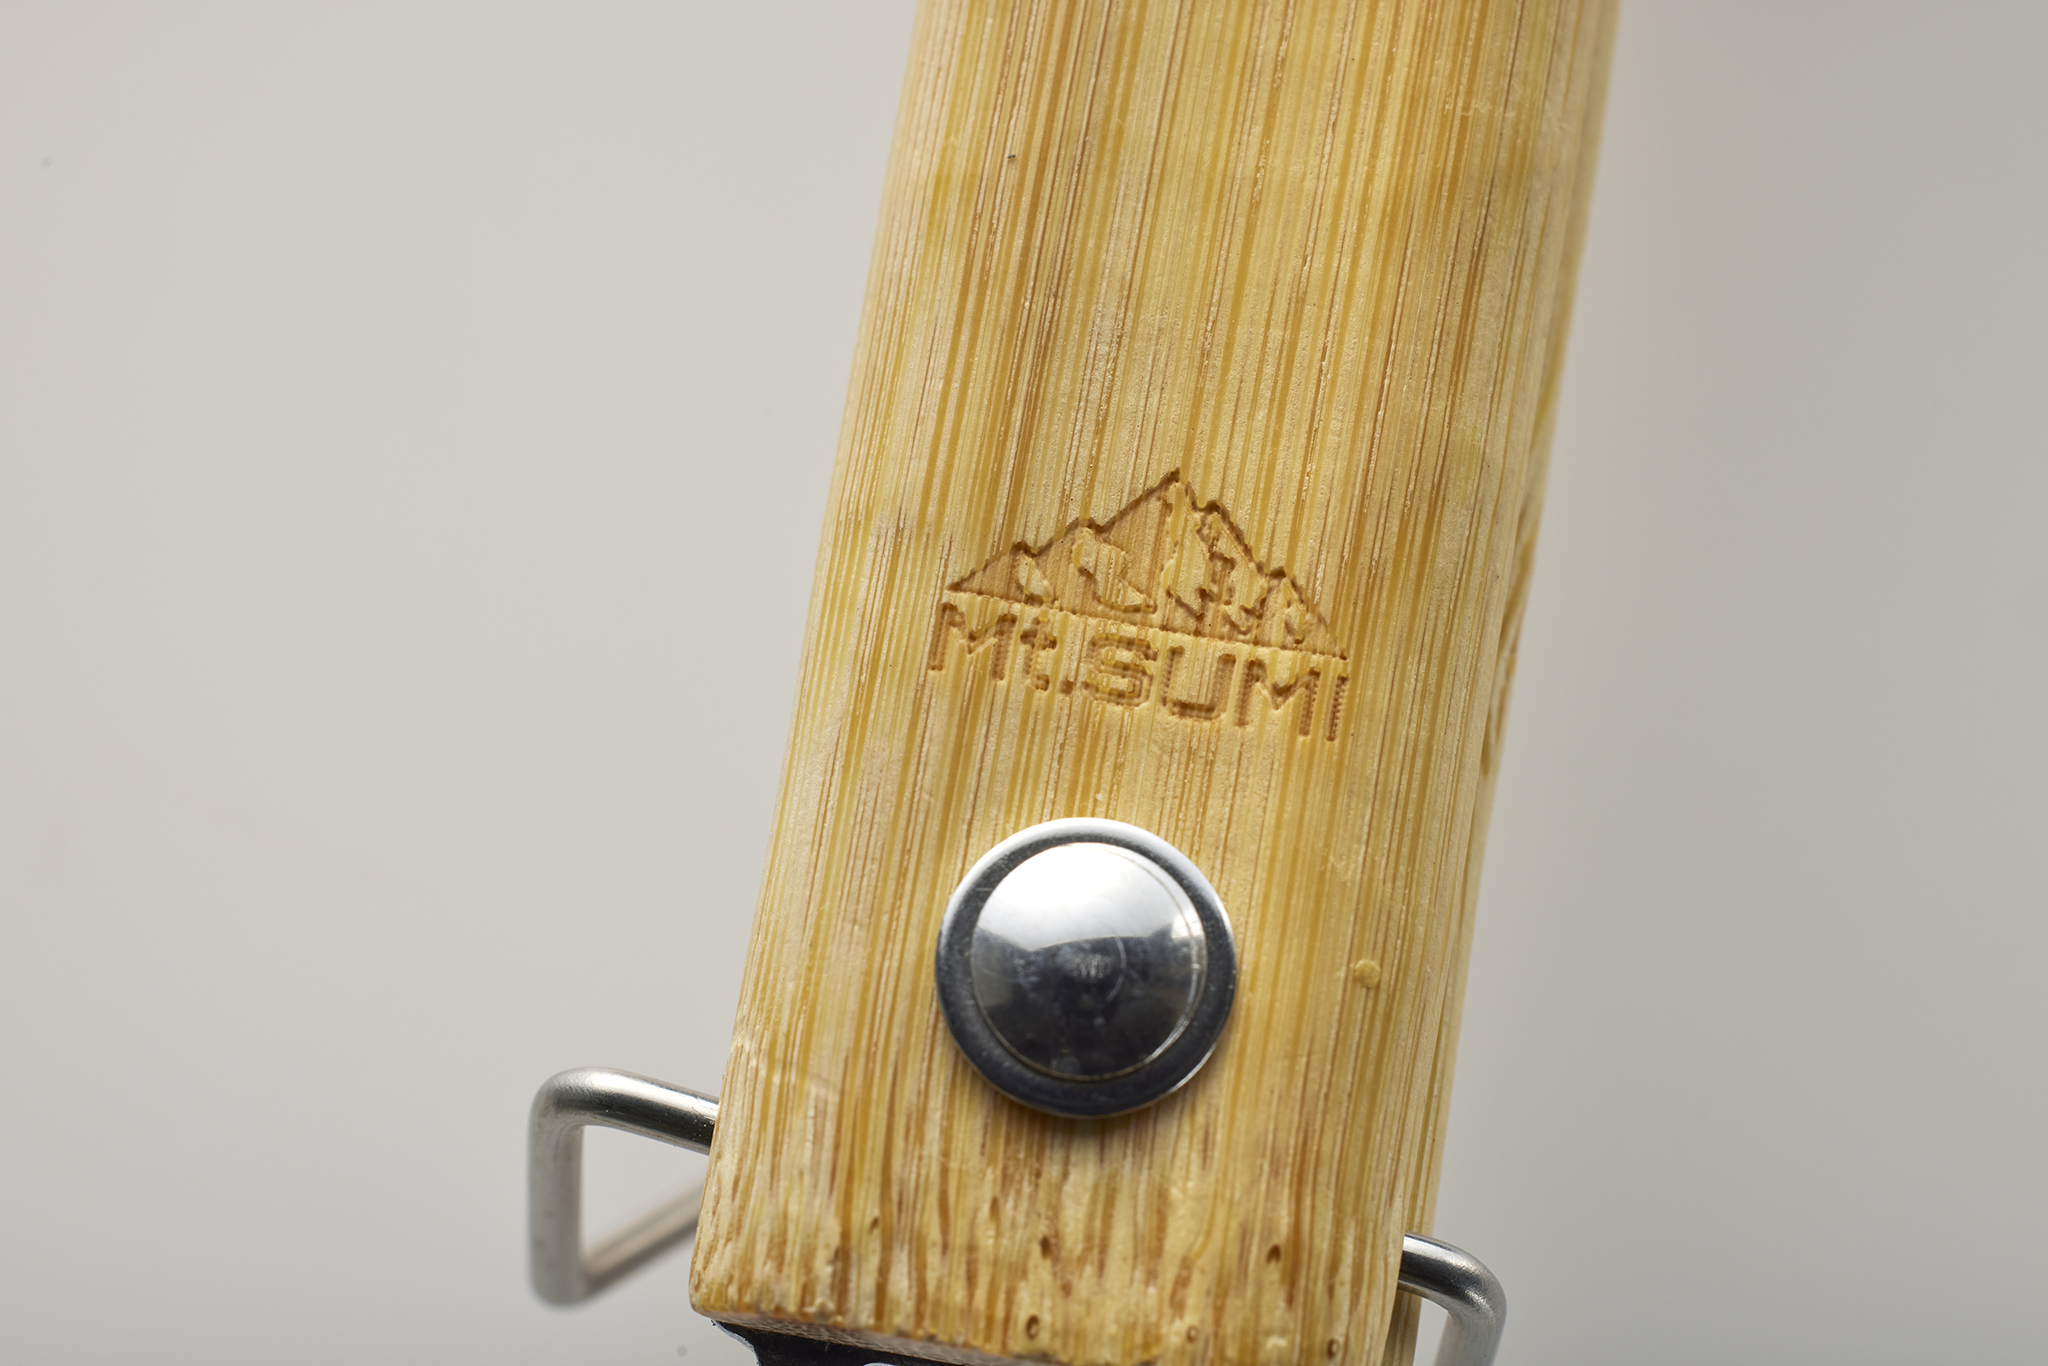 竹製ハンドルに「マウントスミ」の焼き印が押されている。